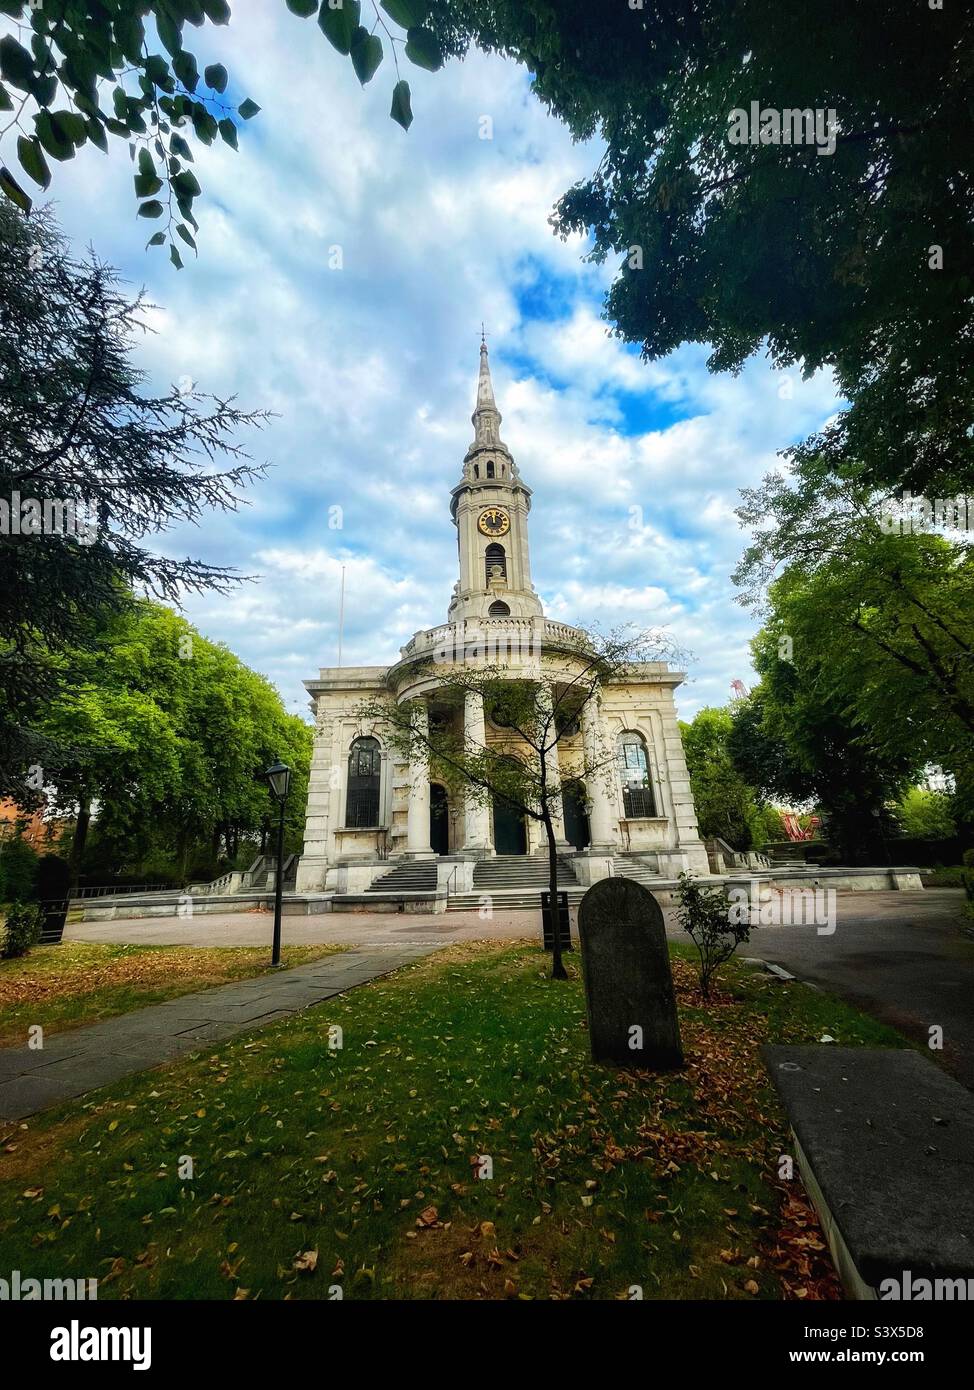 St. Paul’s Parish Church, Deptford. Entworfen von Thomas Archer nach einem Gesetz von 1711 für den Bau neuer Kirchen in London und seinen wachsenden Vororten, ist es eine ‘Queen Anne Church’. Klasse I aufgeführt. Stockfoto